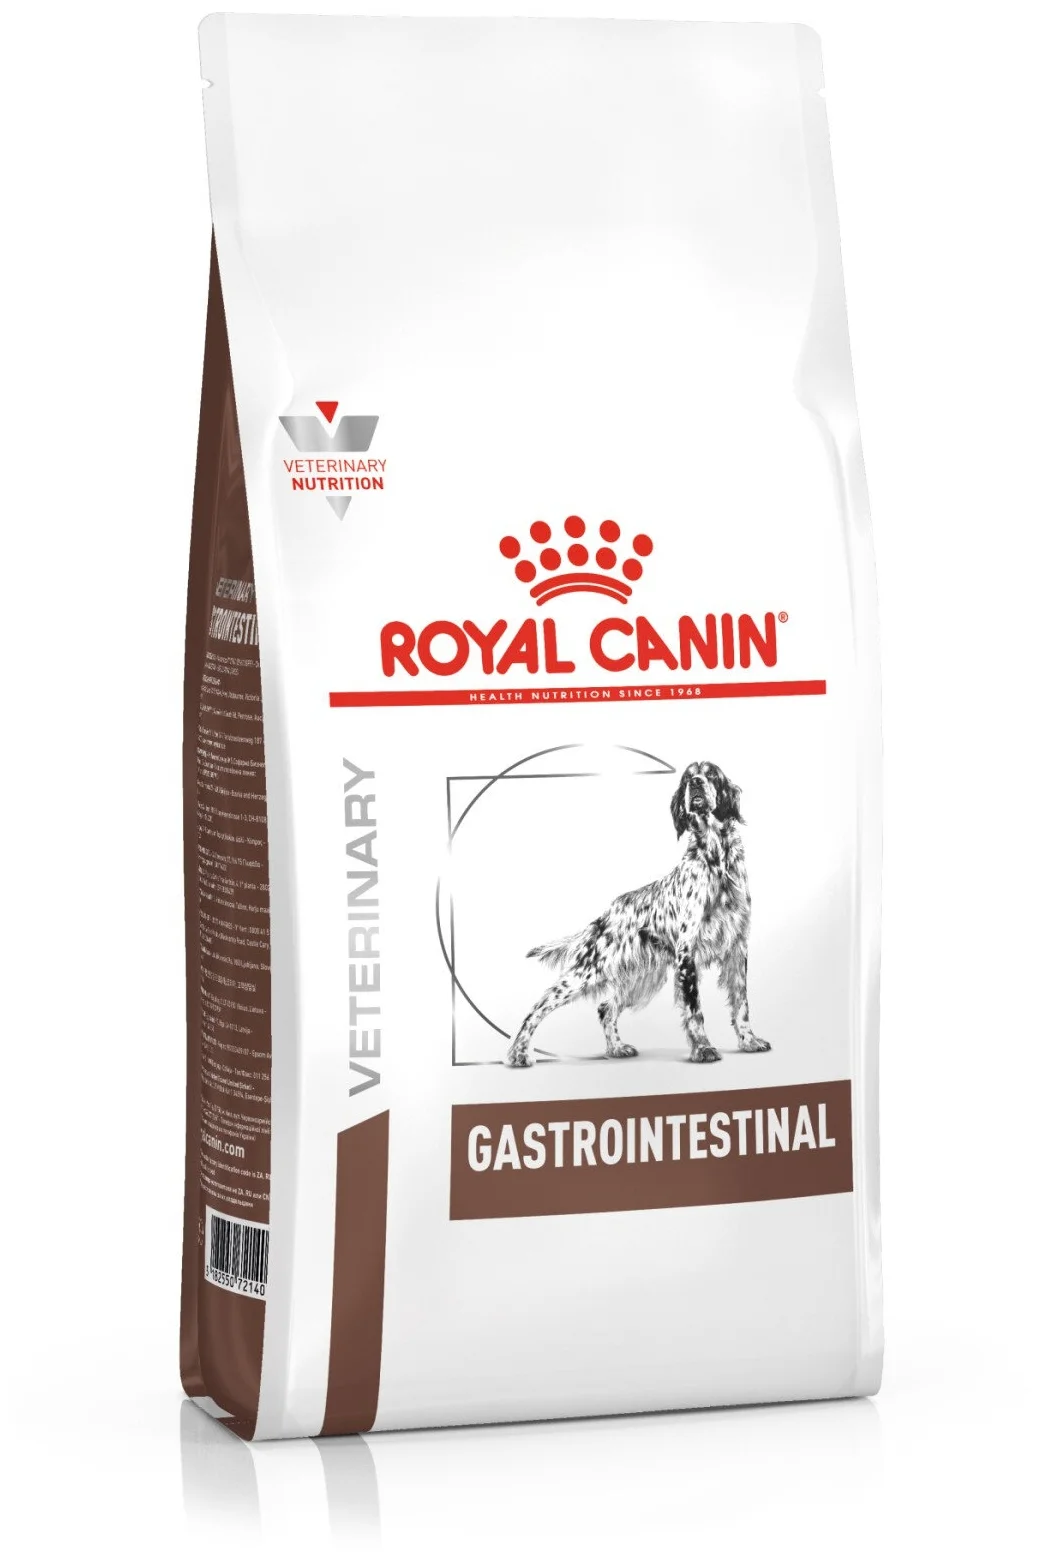 Royal Canin "Gastro Intestinal GI25" - ветеринарная диета: при болезнях ЖКТ